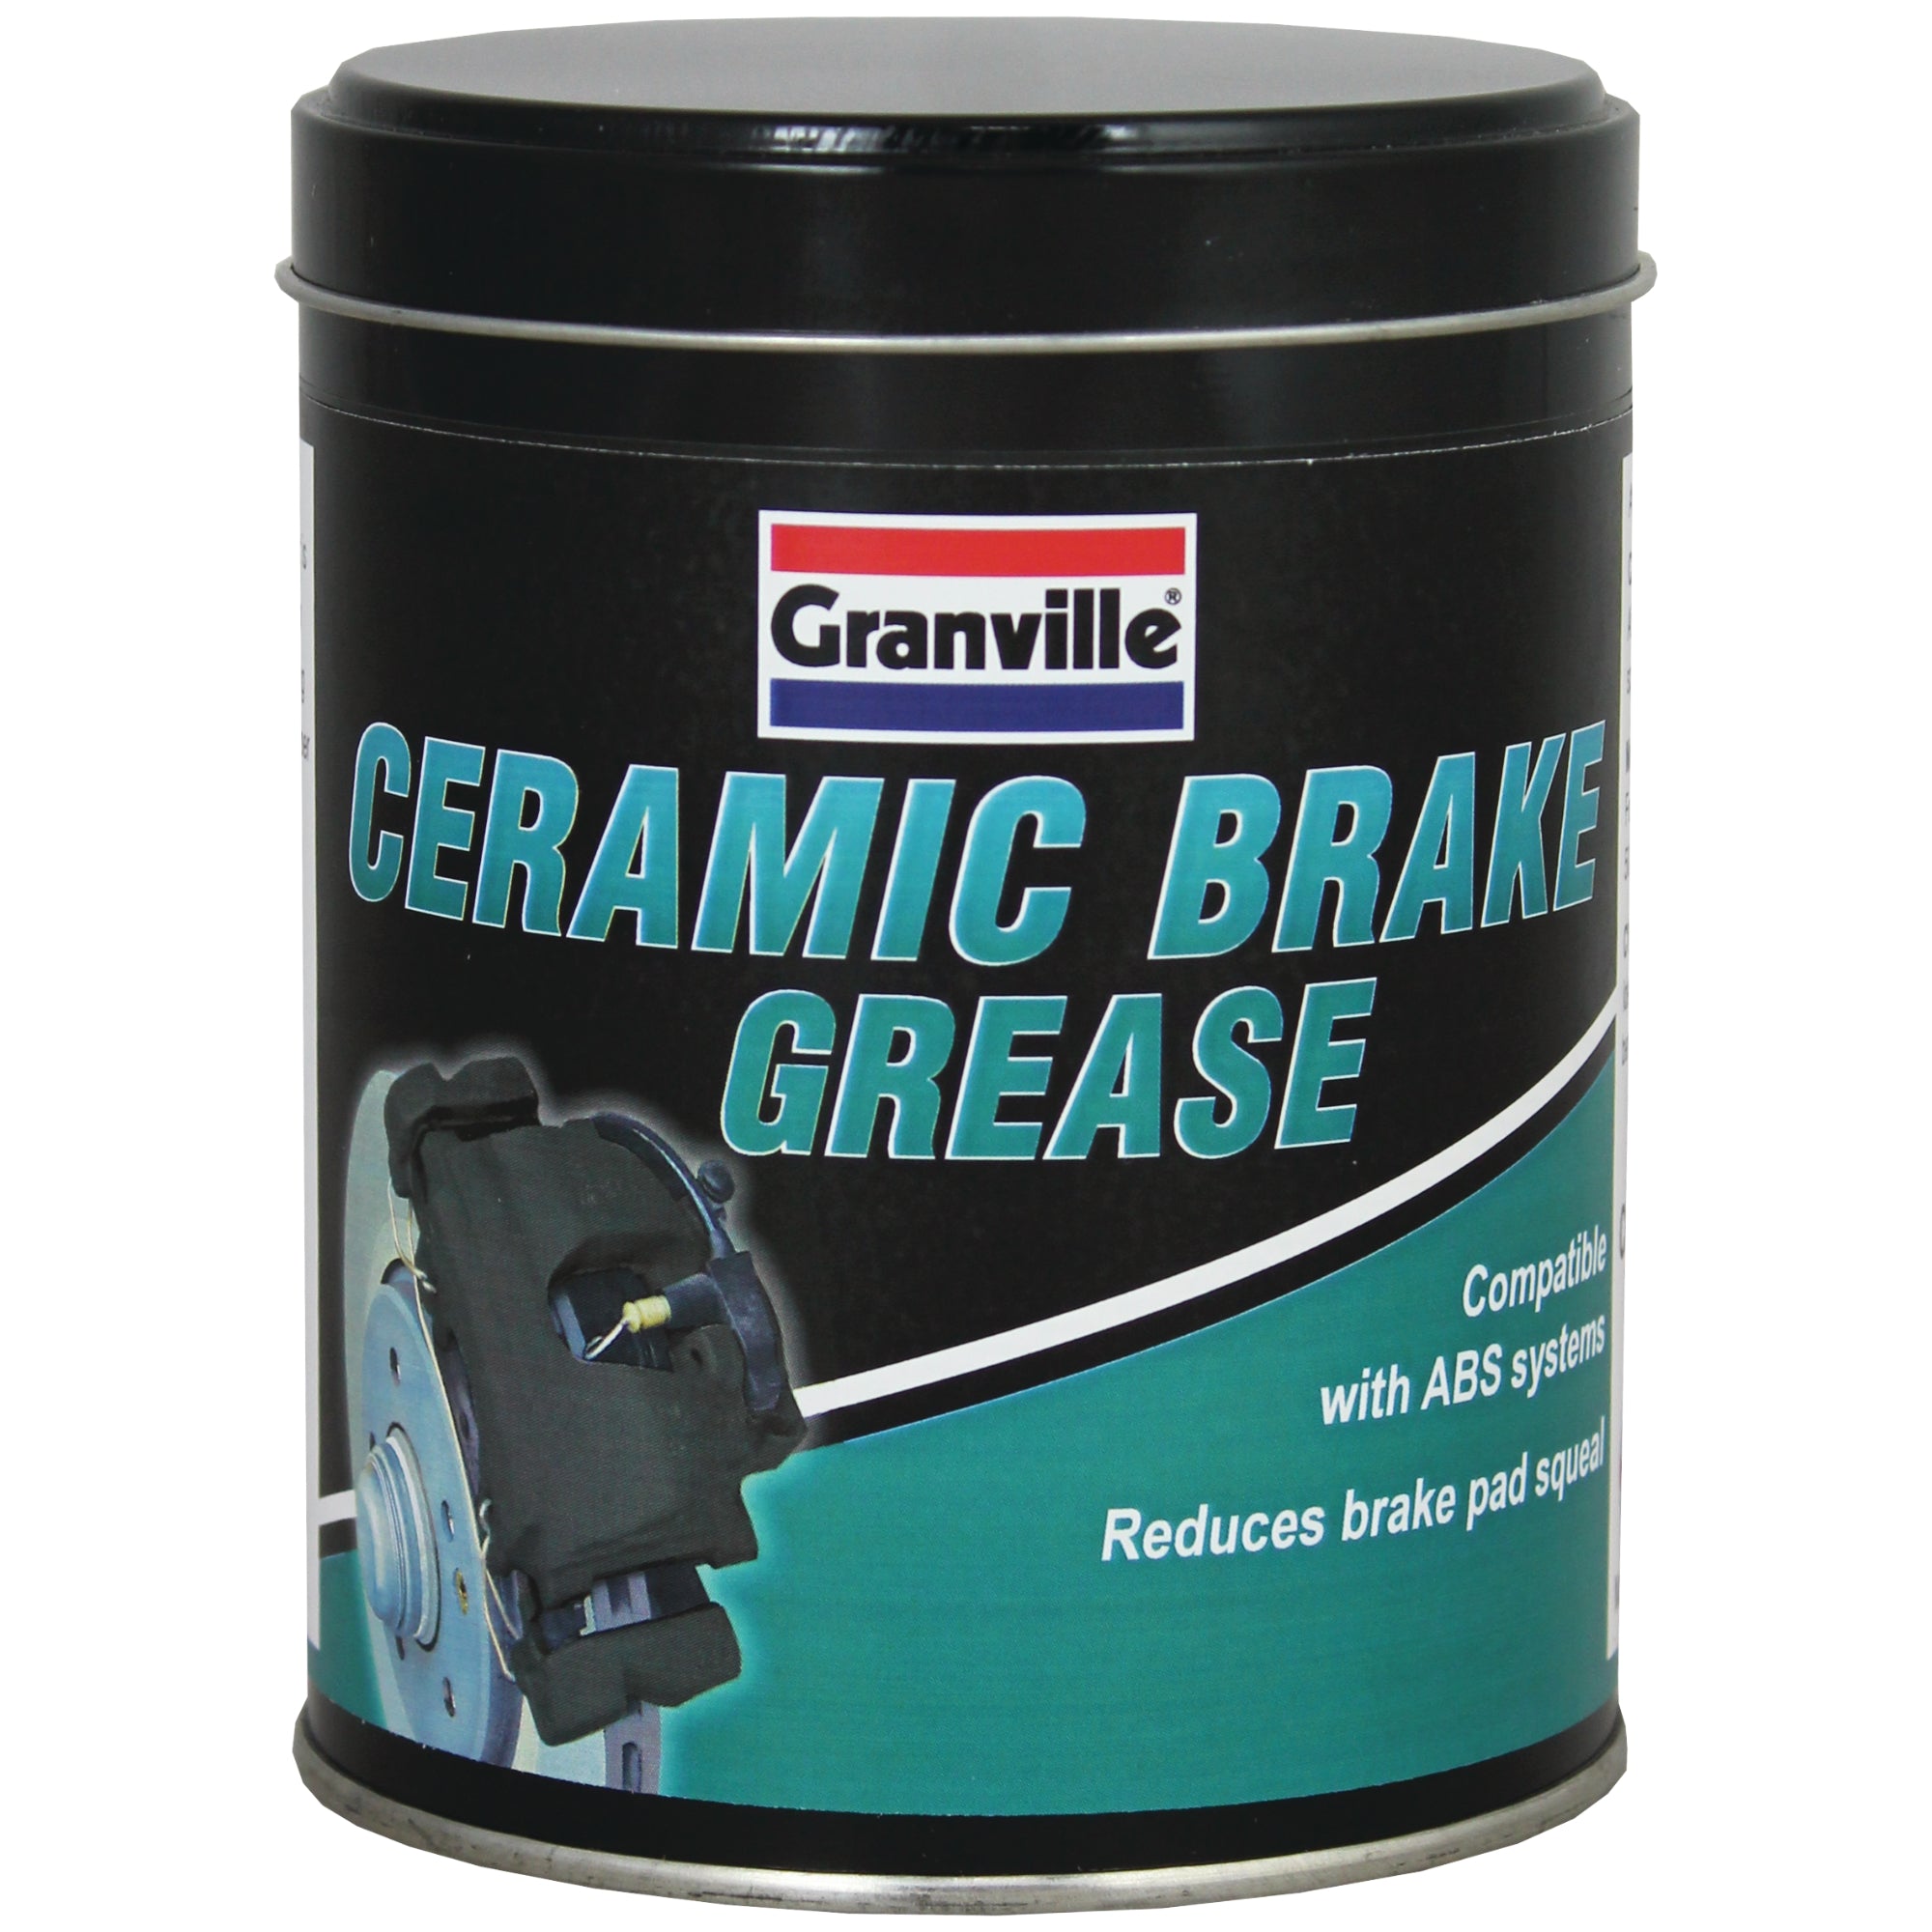 Granville Ceramic Brake Grease 500G